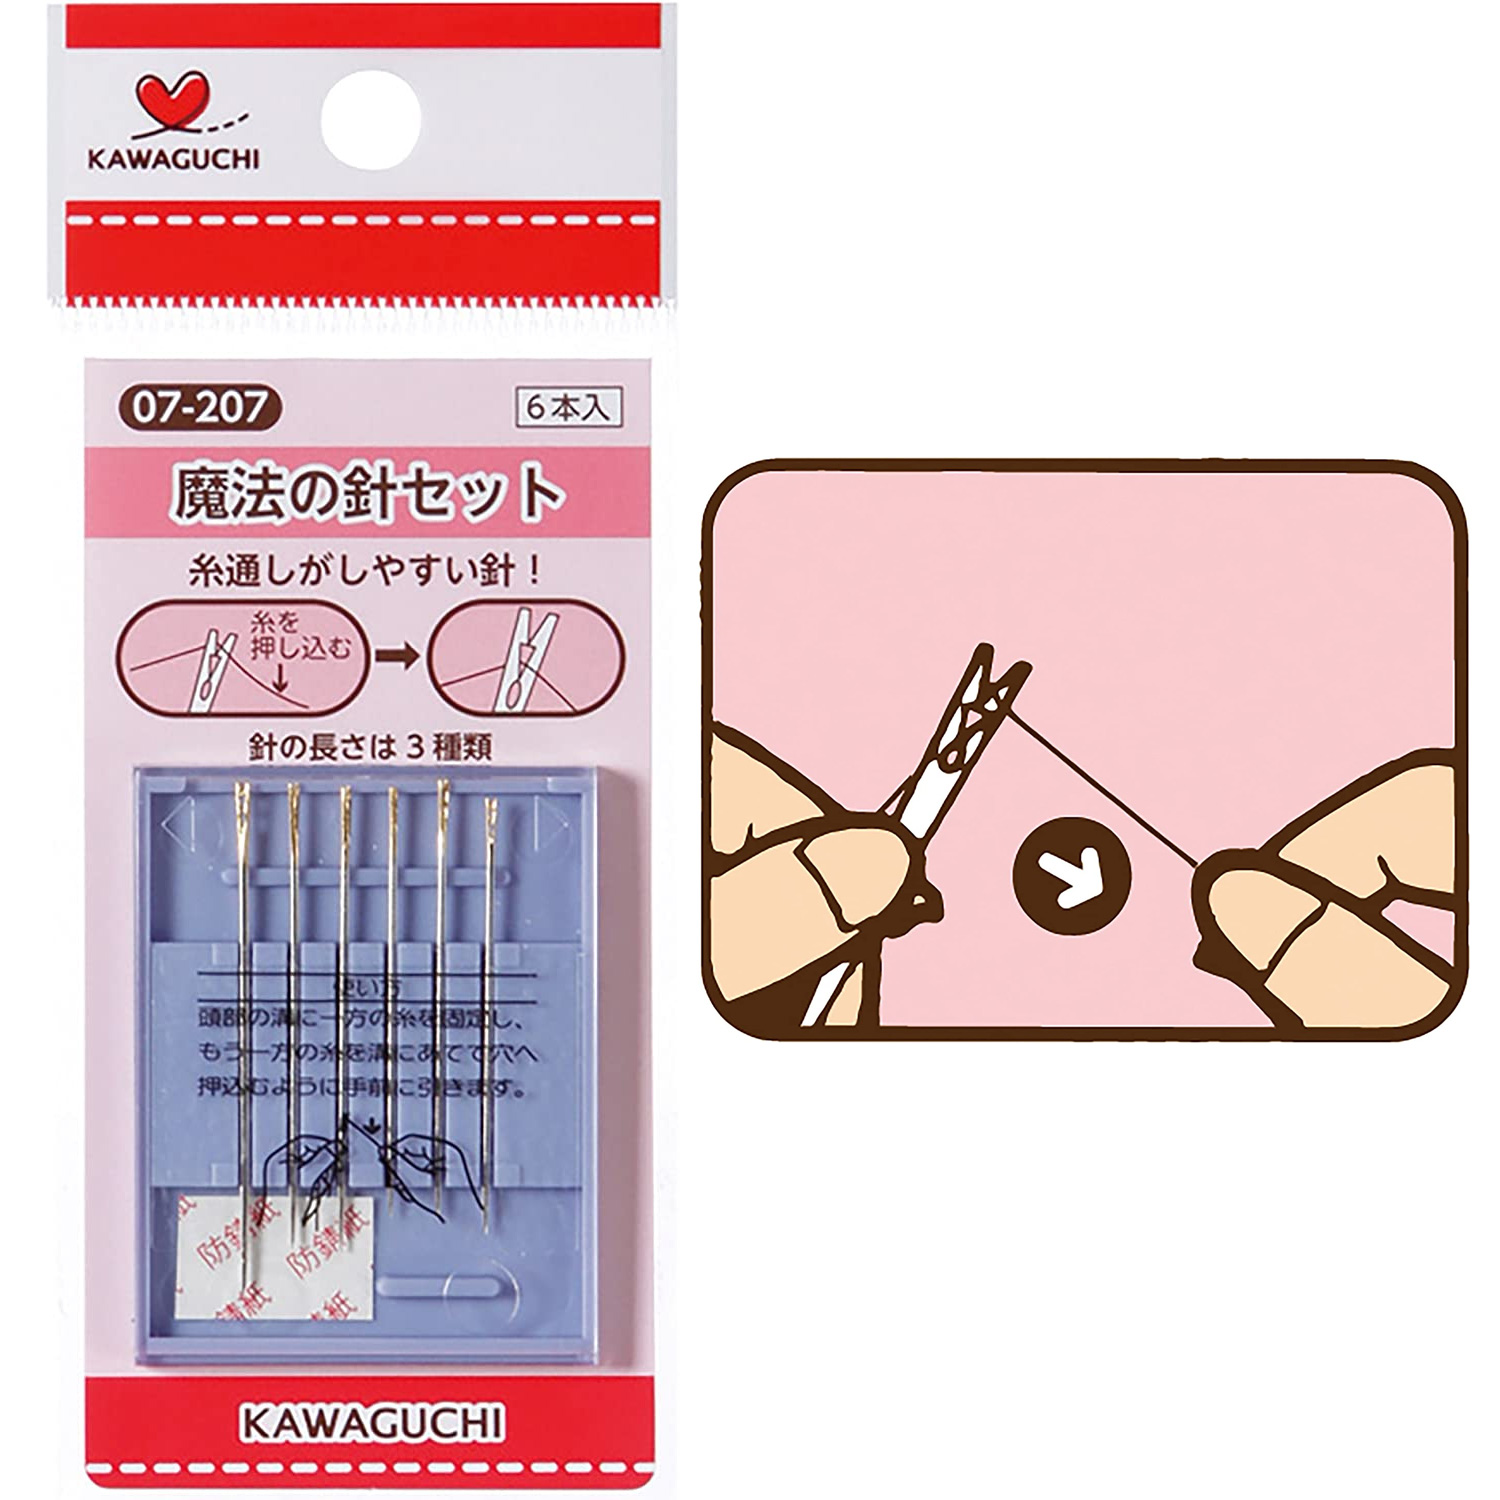 TK07207 KAWAGUCHI Magic Hands Needle Set of 6pcs (set)